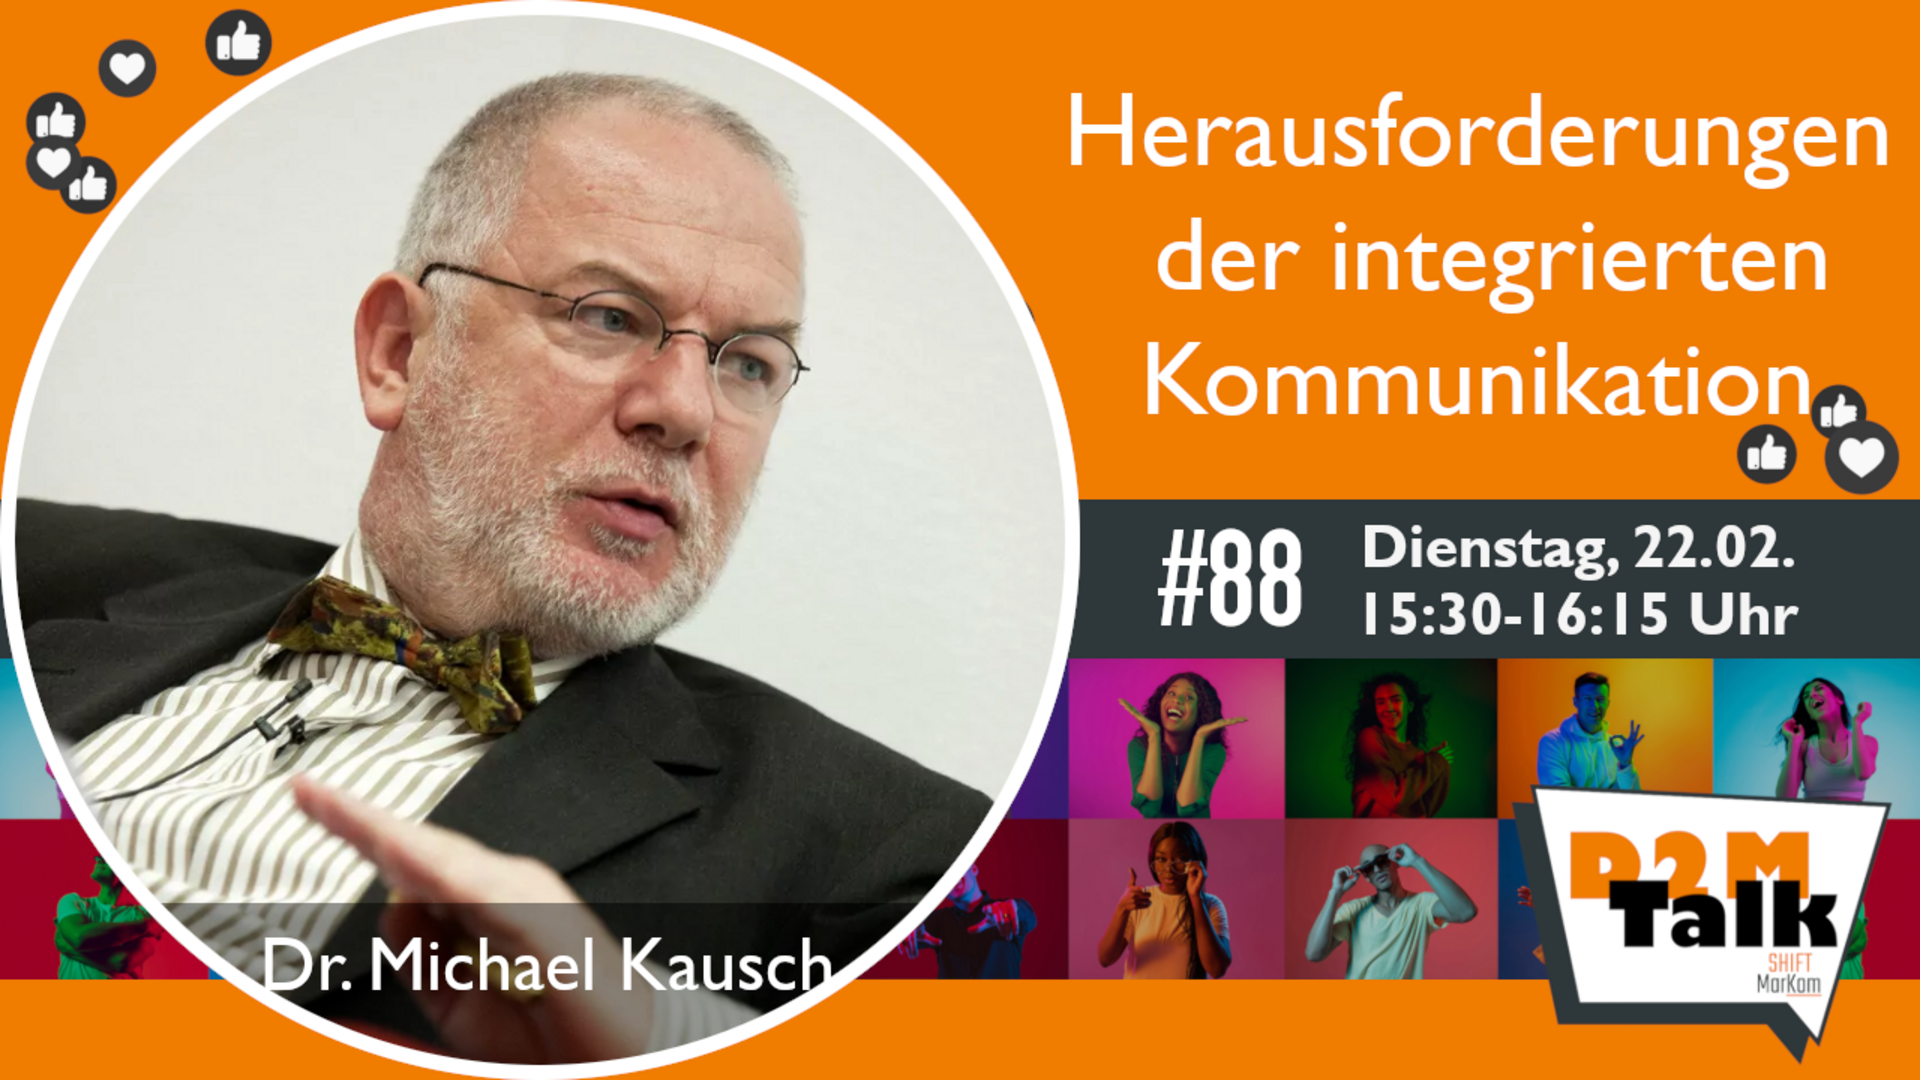 Im Gespräch mit Dr. Michael Kausch zu den Herausforderungen der integrierten Kommunikation in der Medienwelt 2022